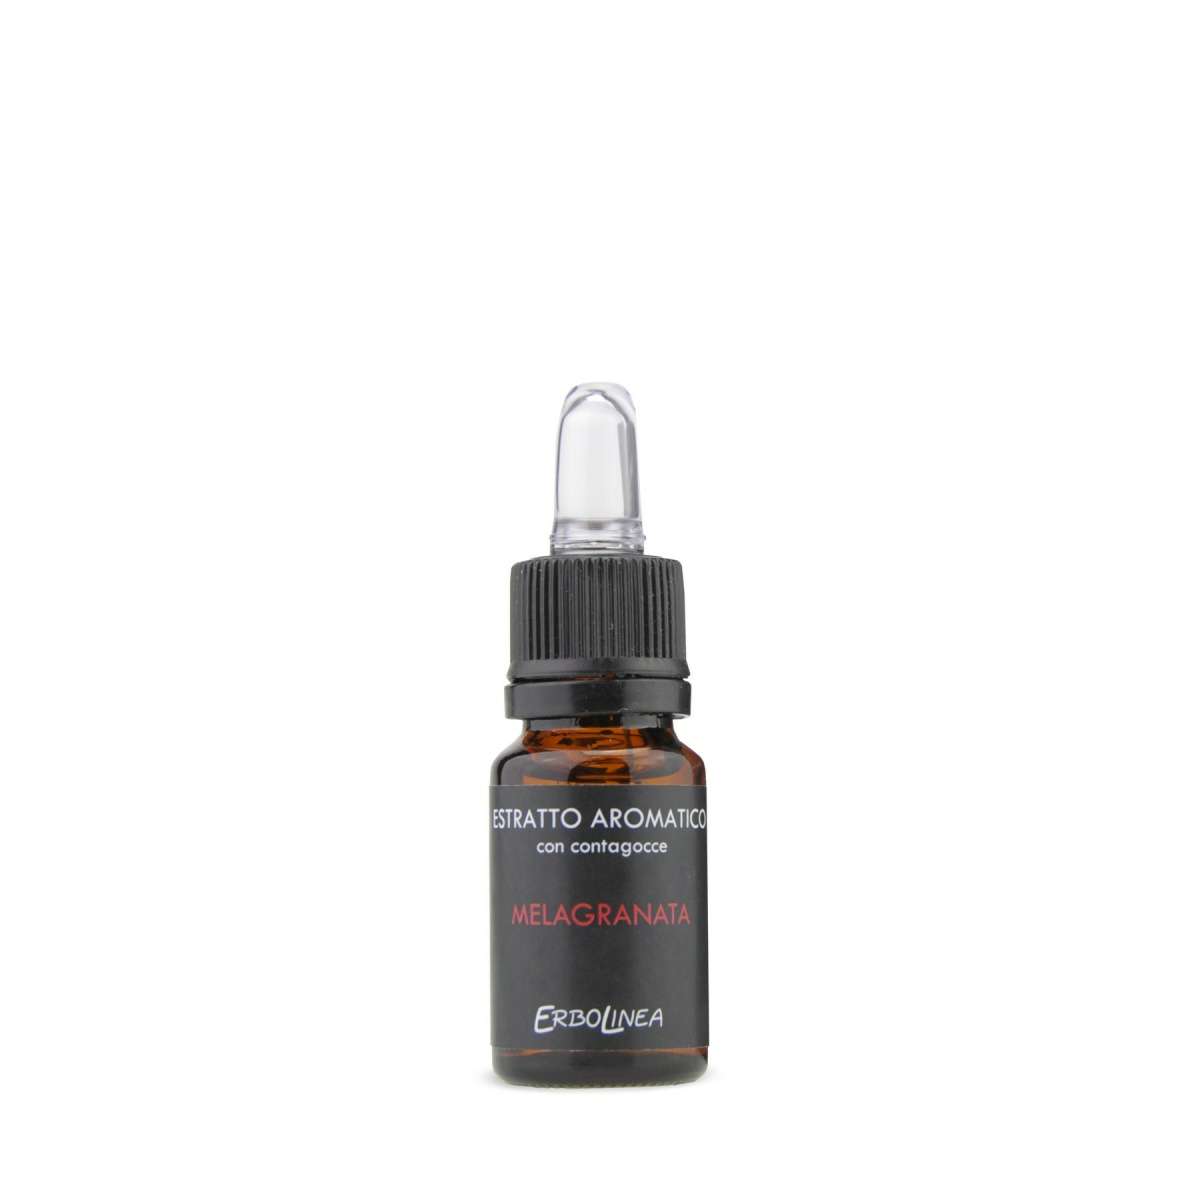 Immagine del prodotto Estratto Aromatico con Contagocce Melagranata 10 ml | Erbolinea Prestige